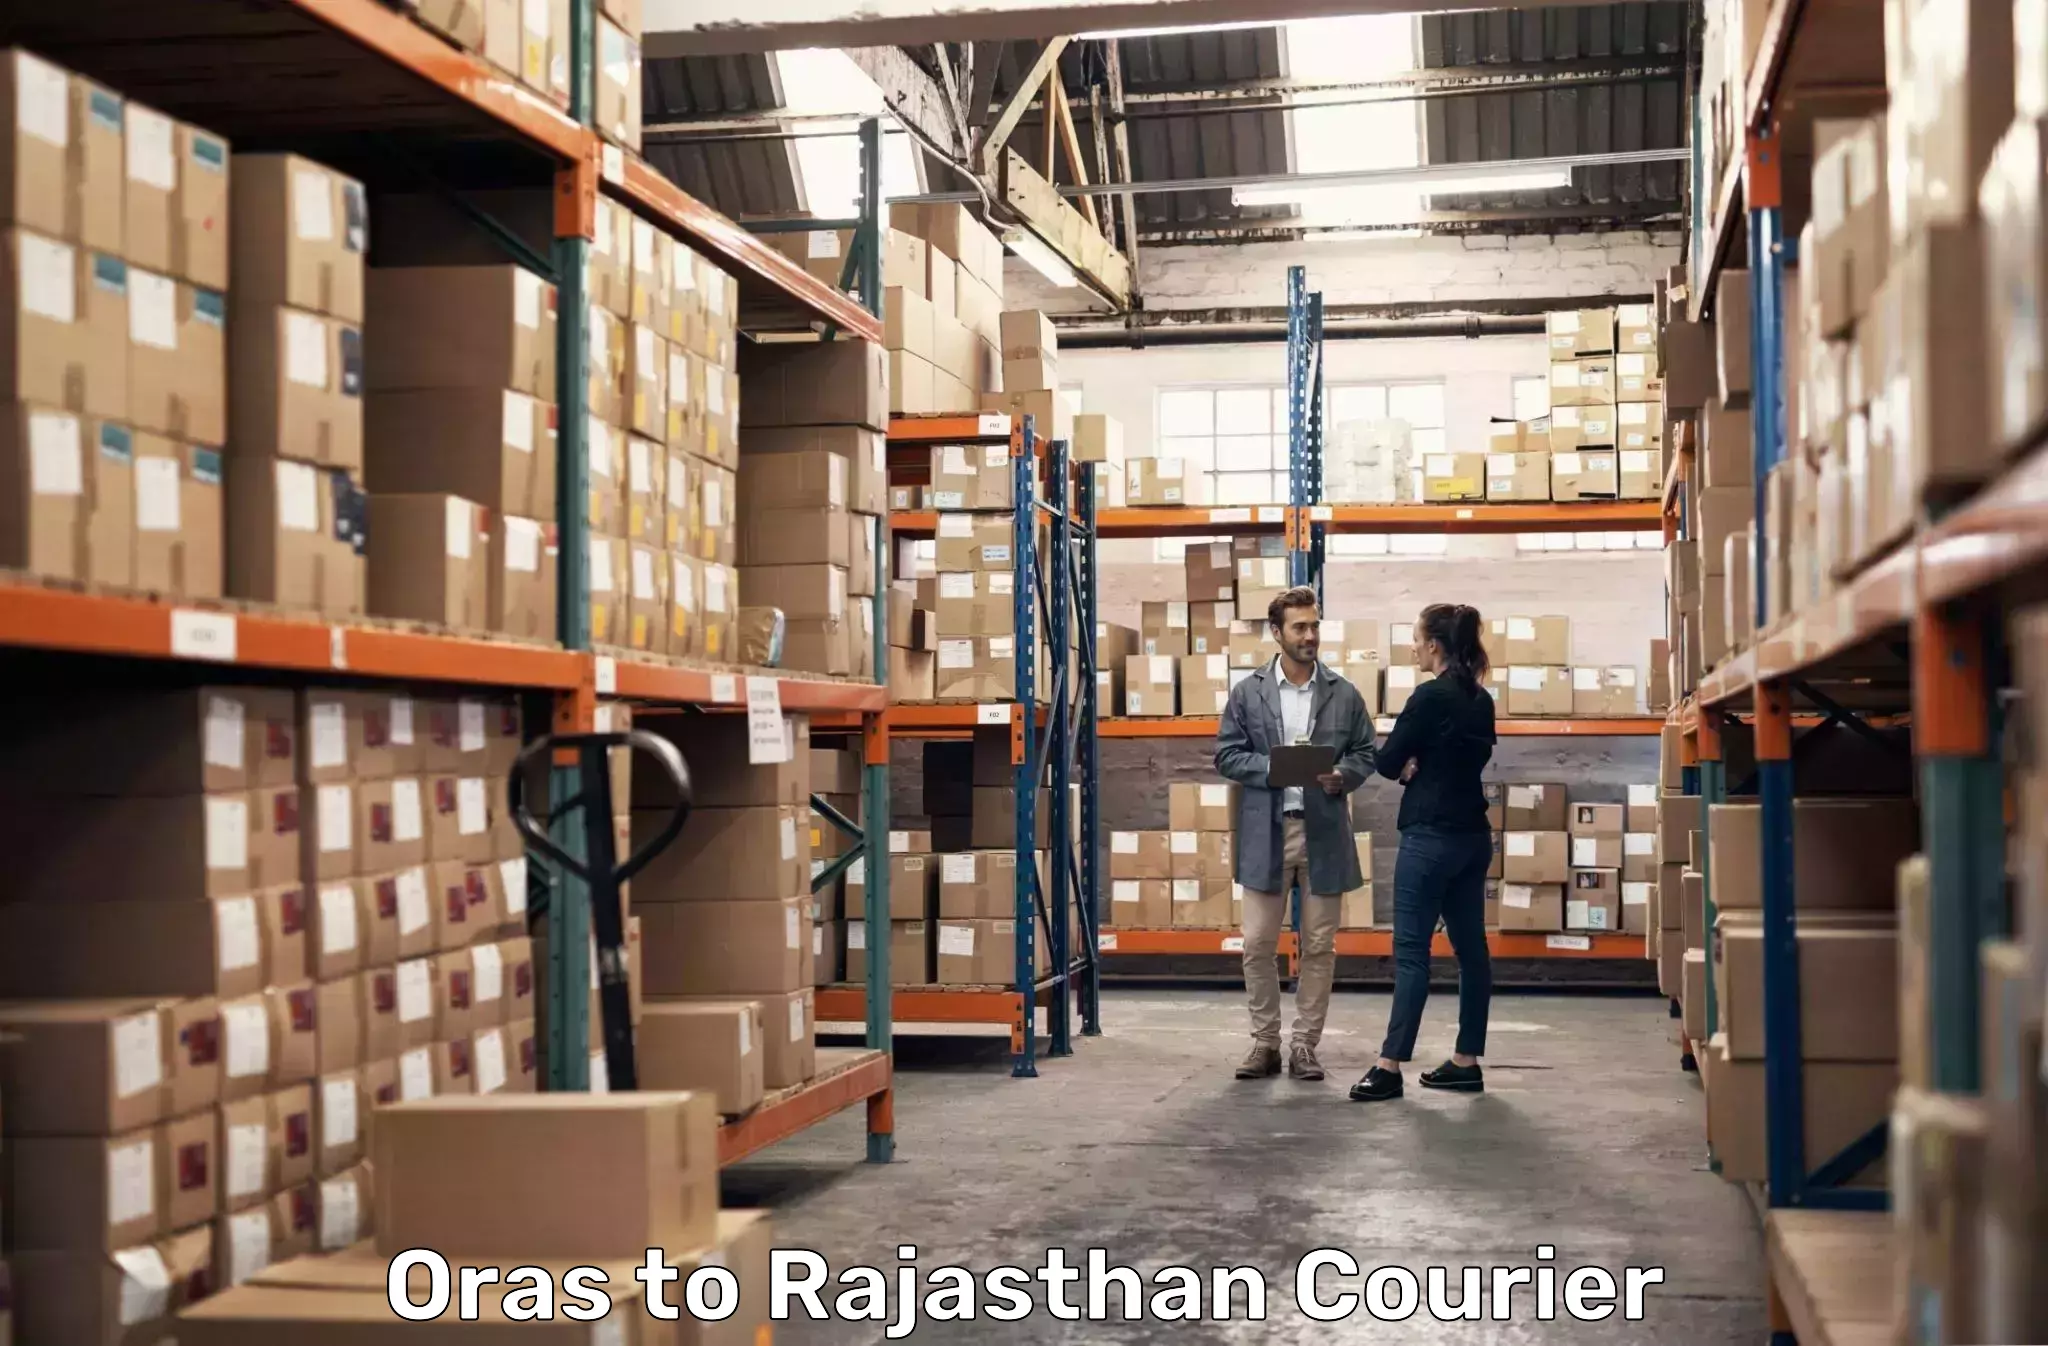 Cargo delivery service Oras to Pokhran